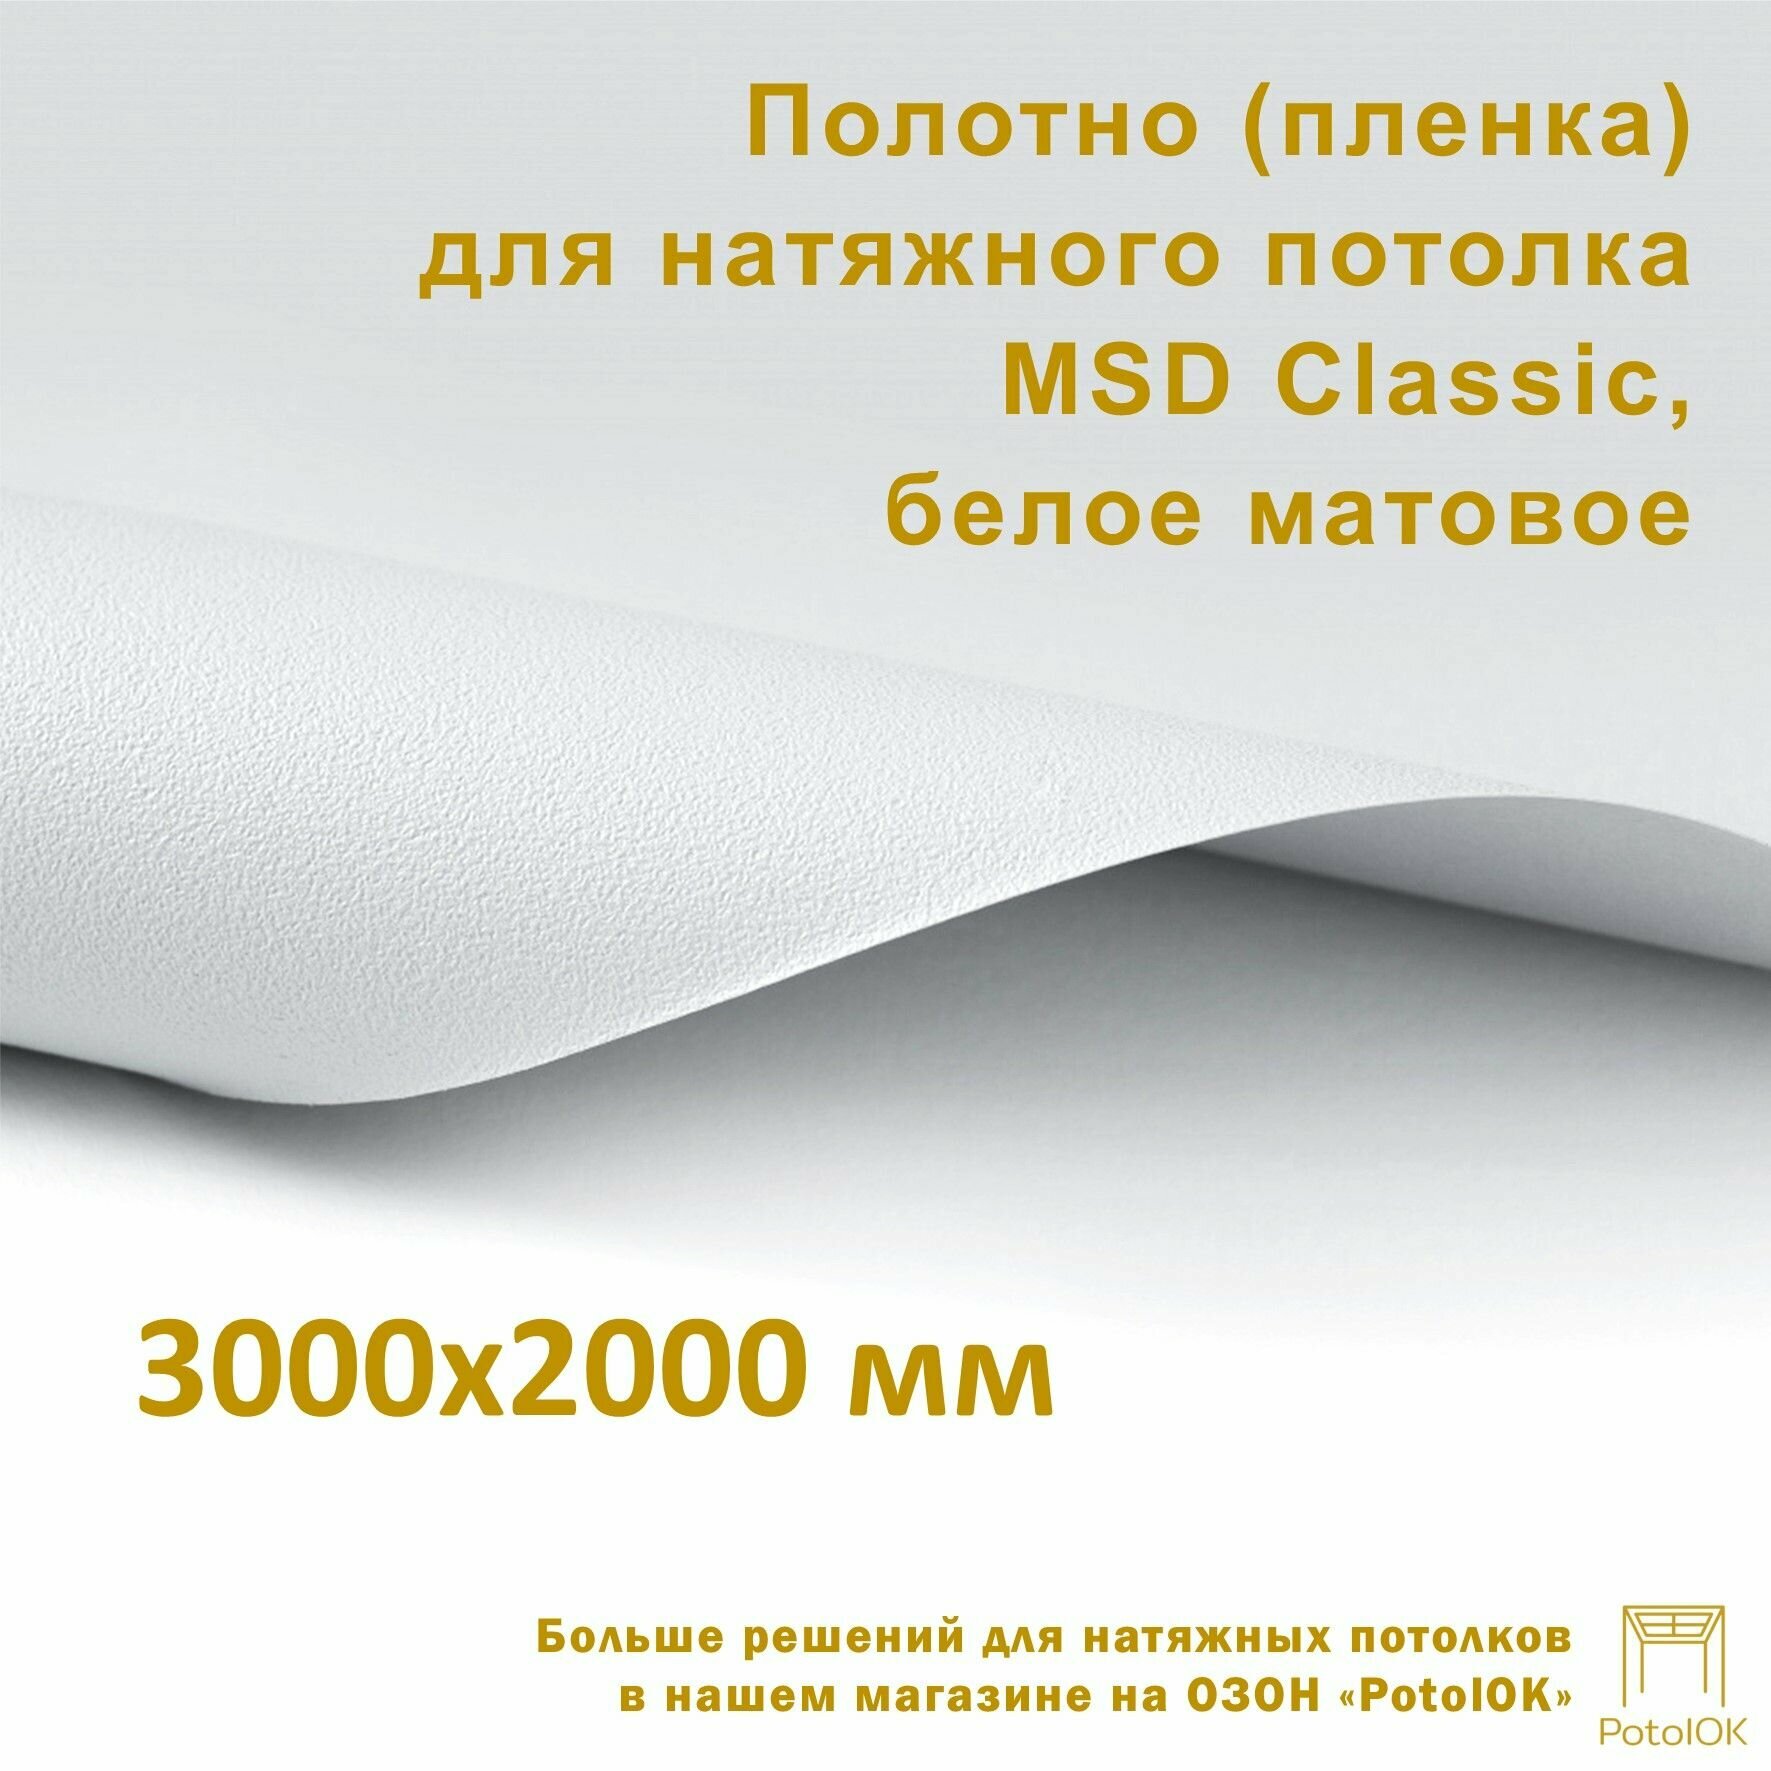 Полотно (пленка) для натяжного потолка MSD CLASSIC белое матовое 3000x2000 мм